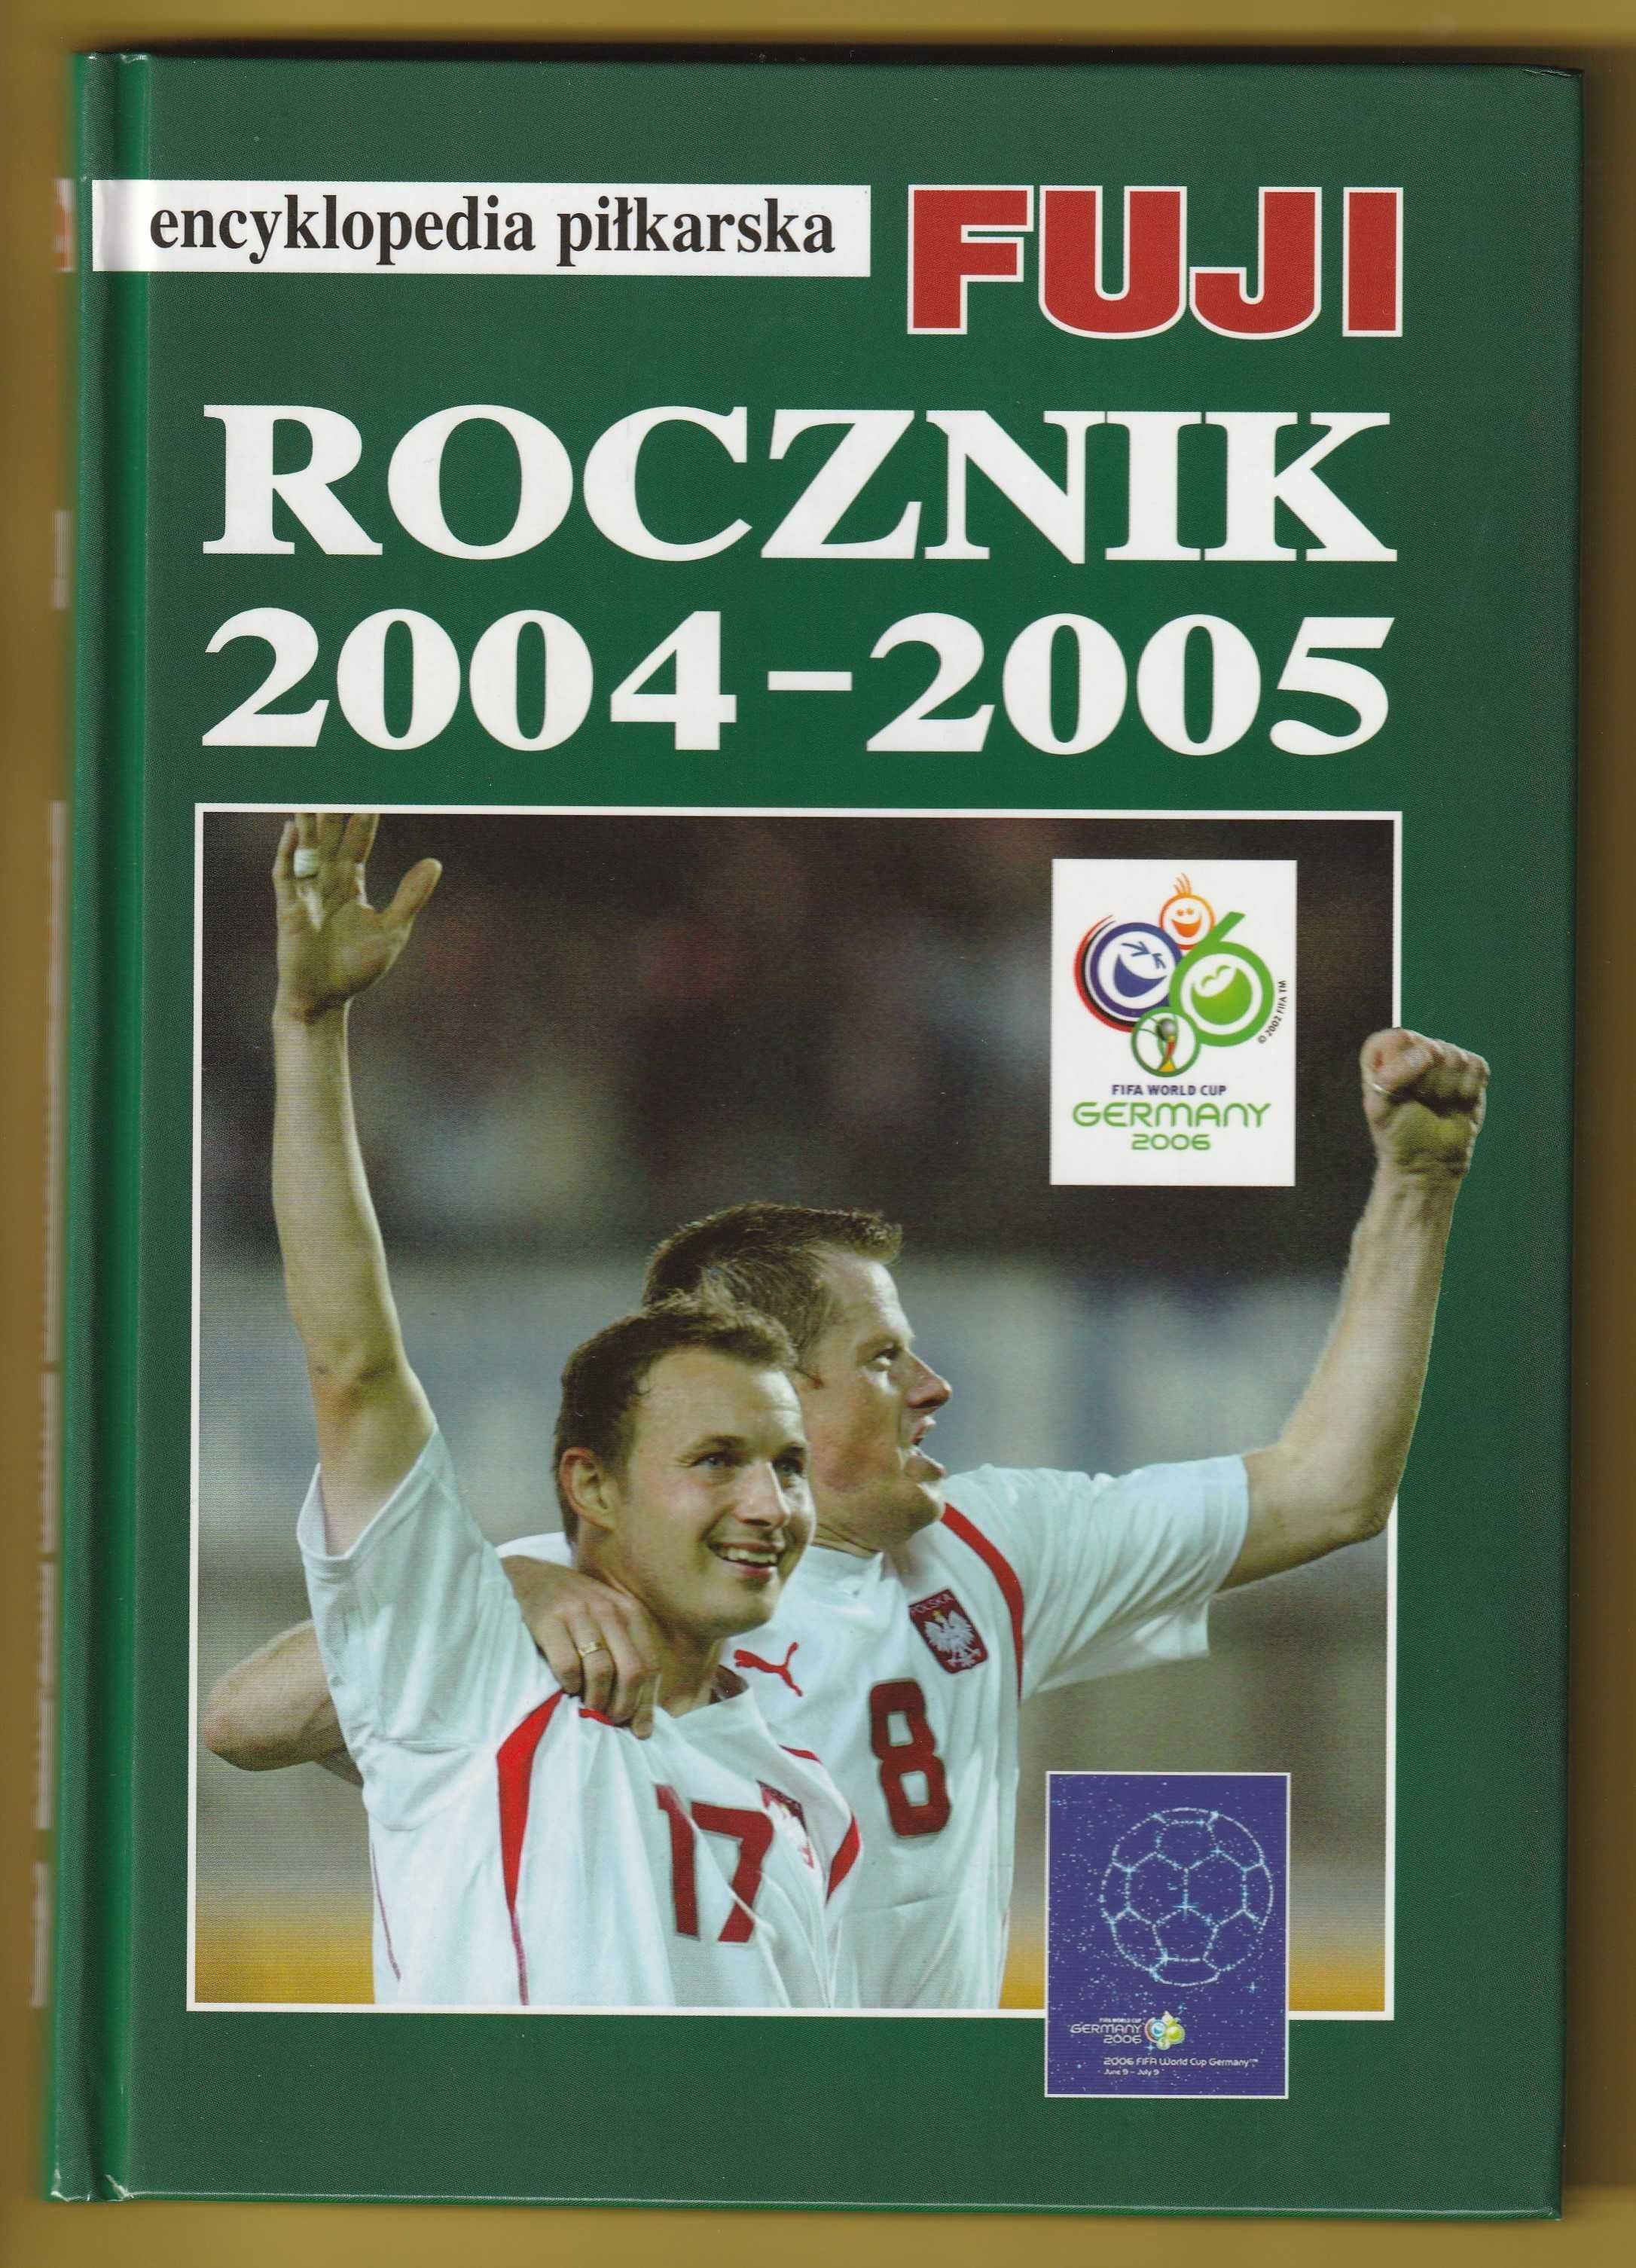 Encyklopedia piłkarska Fuji - Rocznik 04-2005 - E31 - Gowarzewski